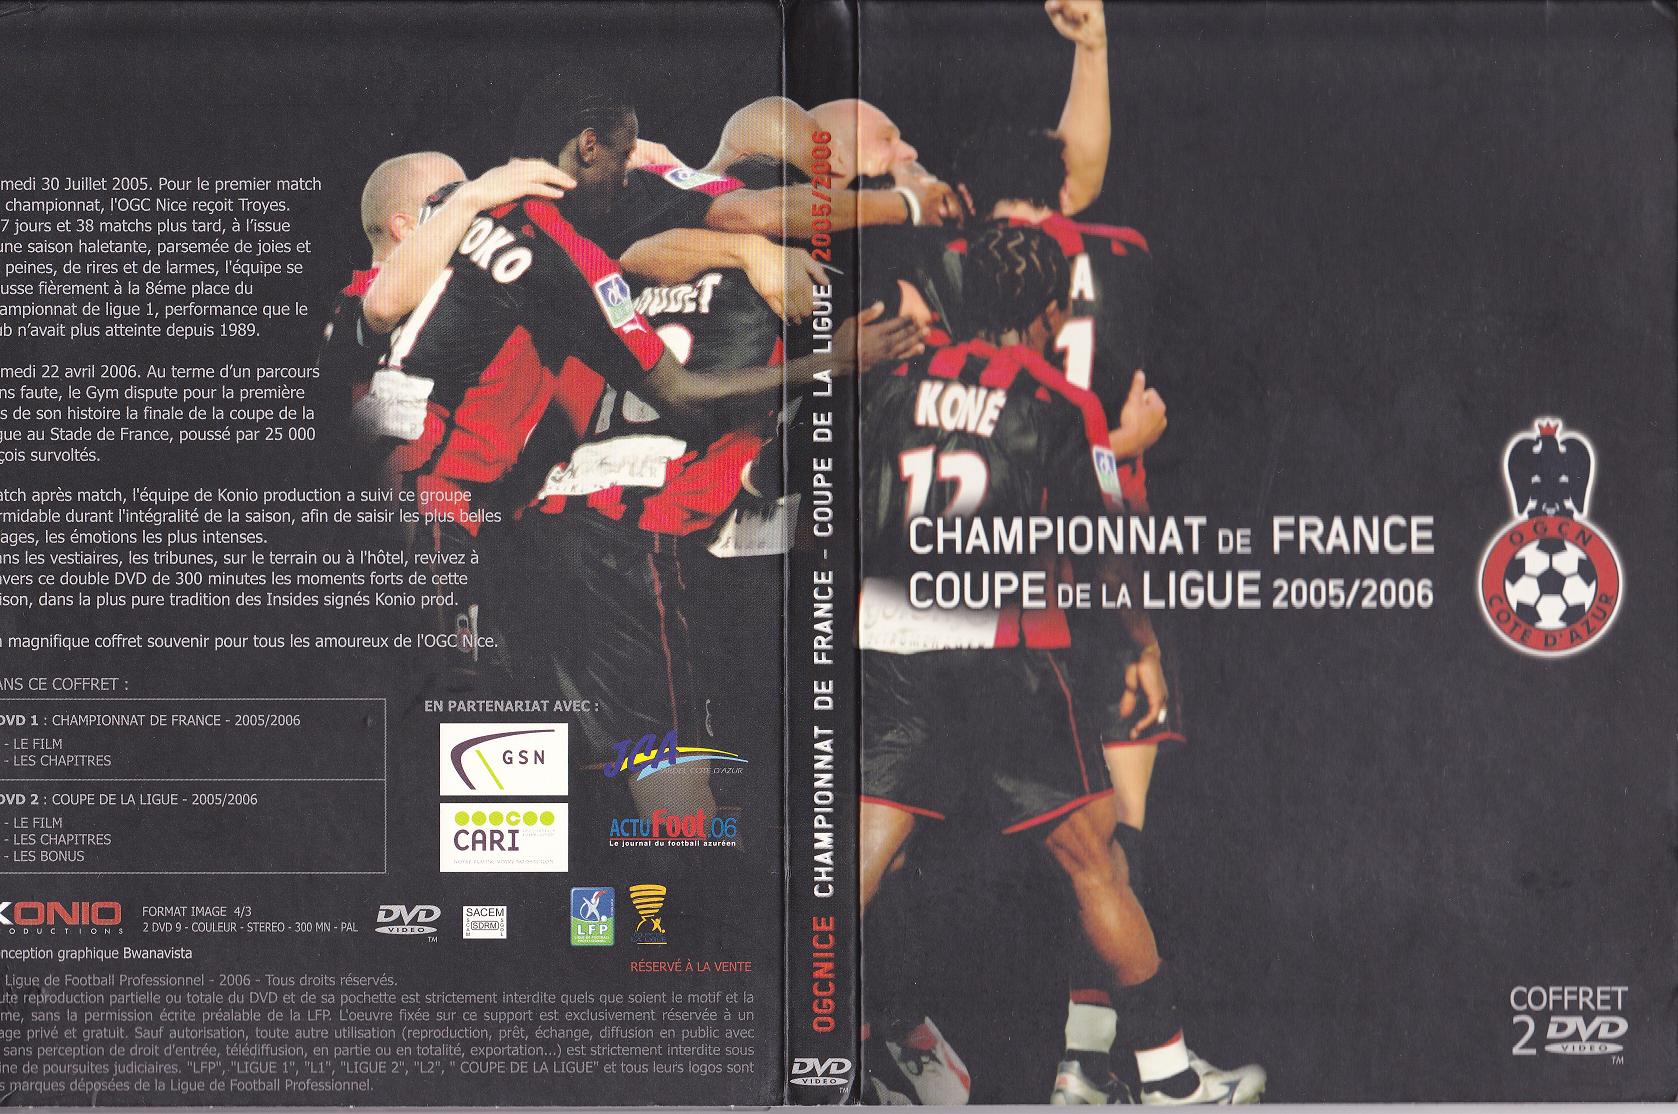 DVD OGC NICE Championnat - Coupe de la Ligue 2005/2006